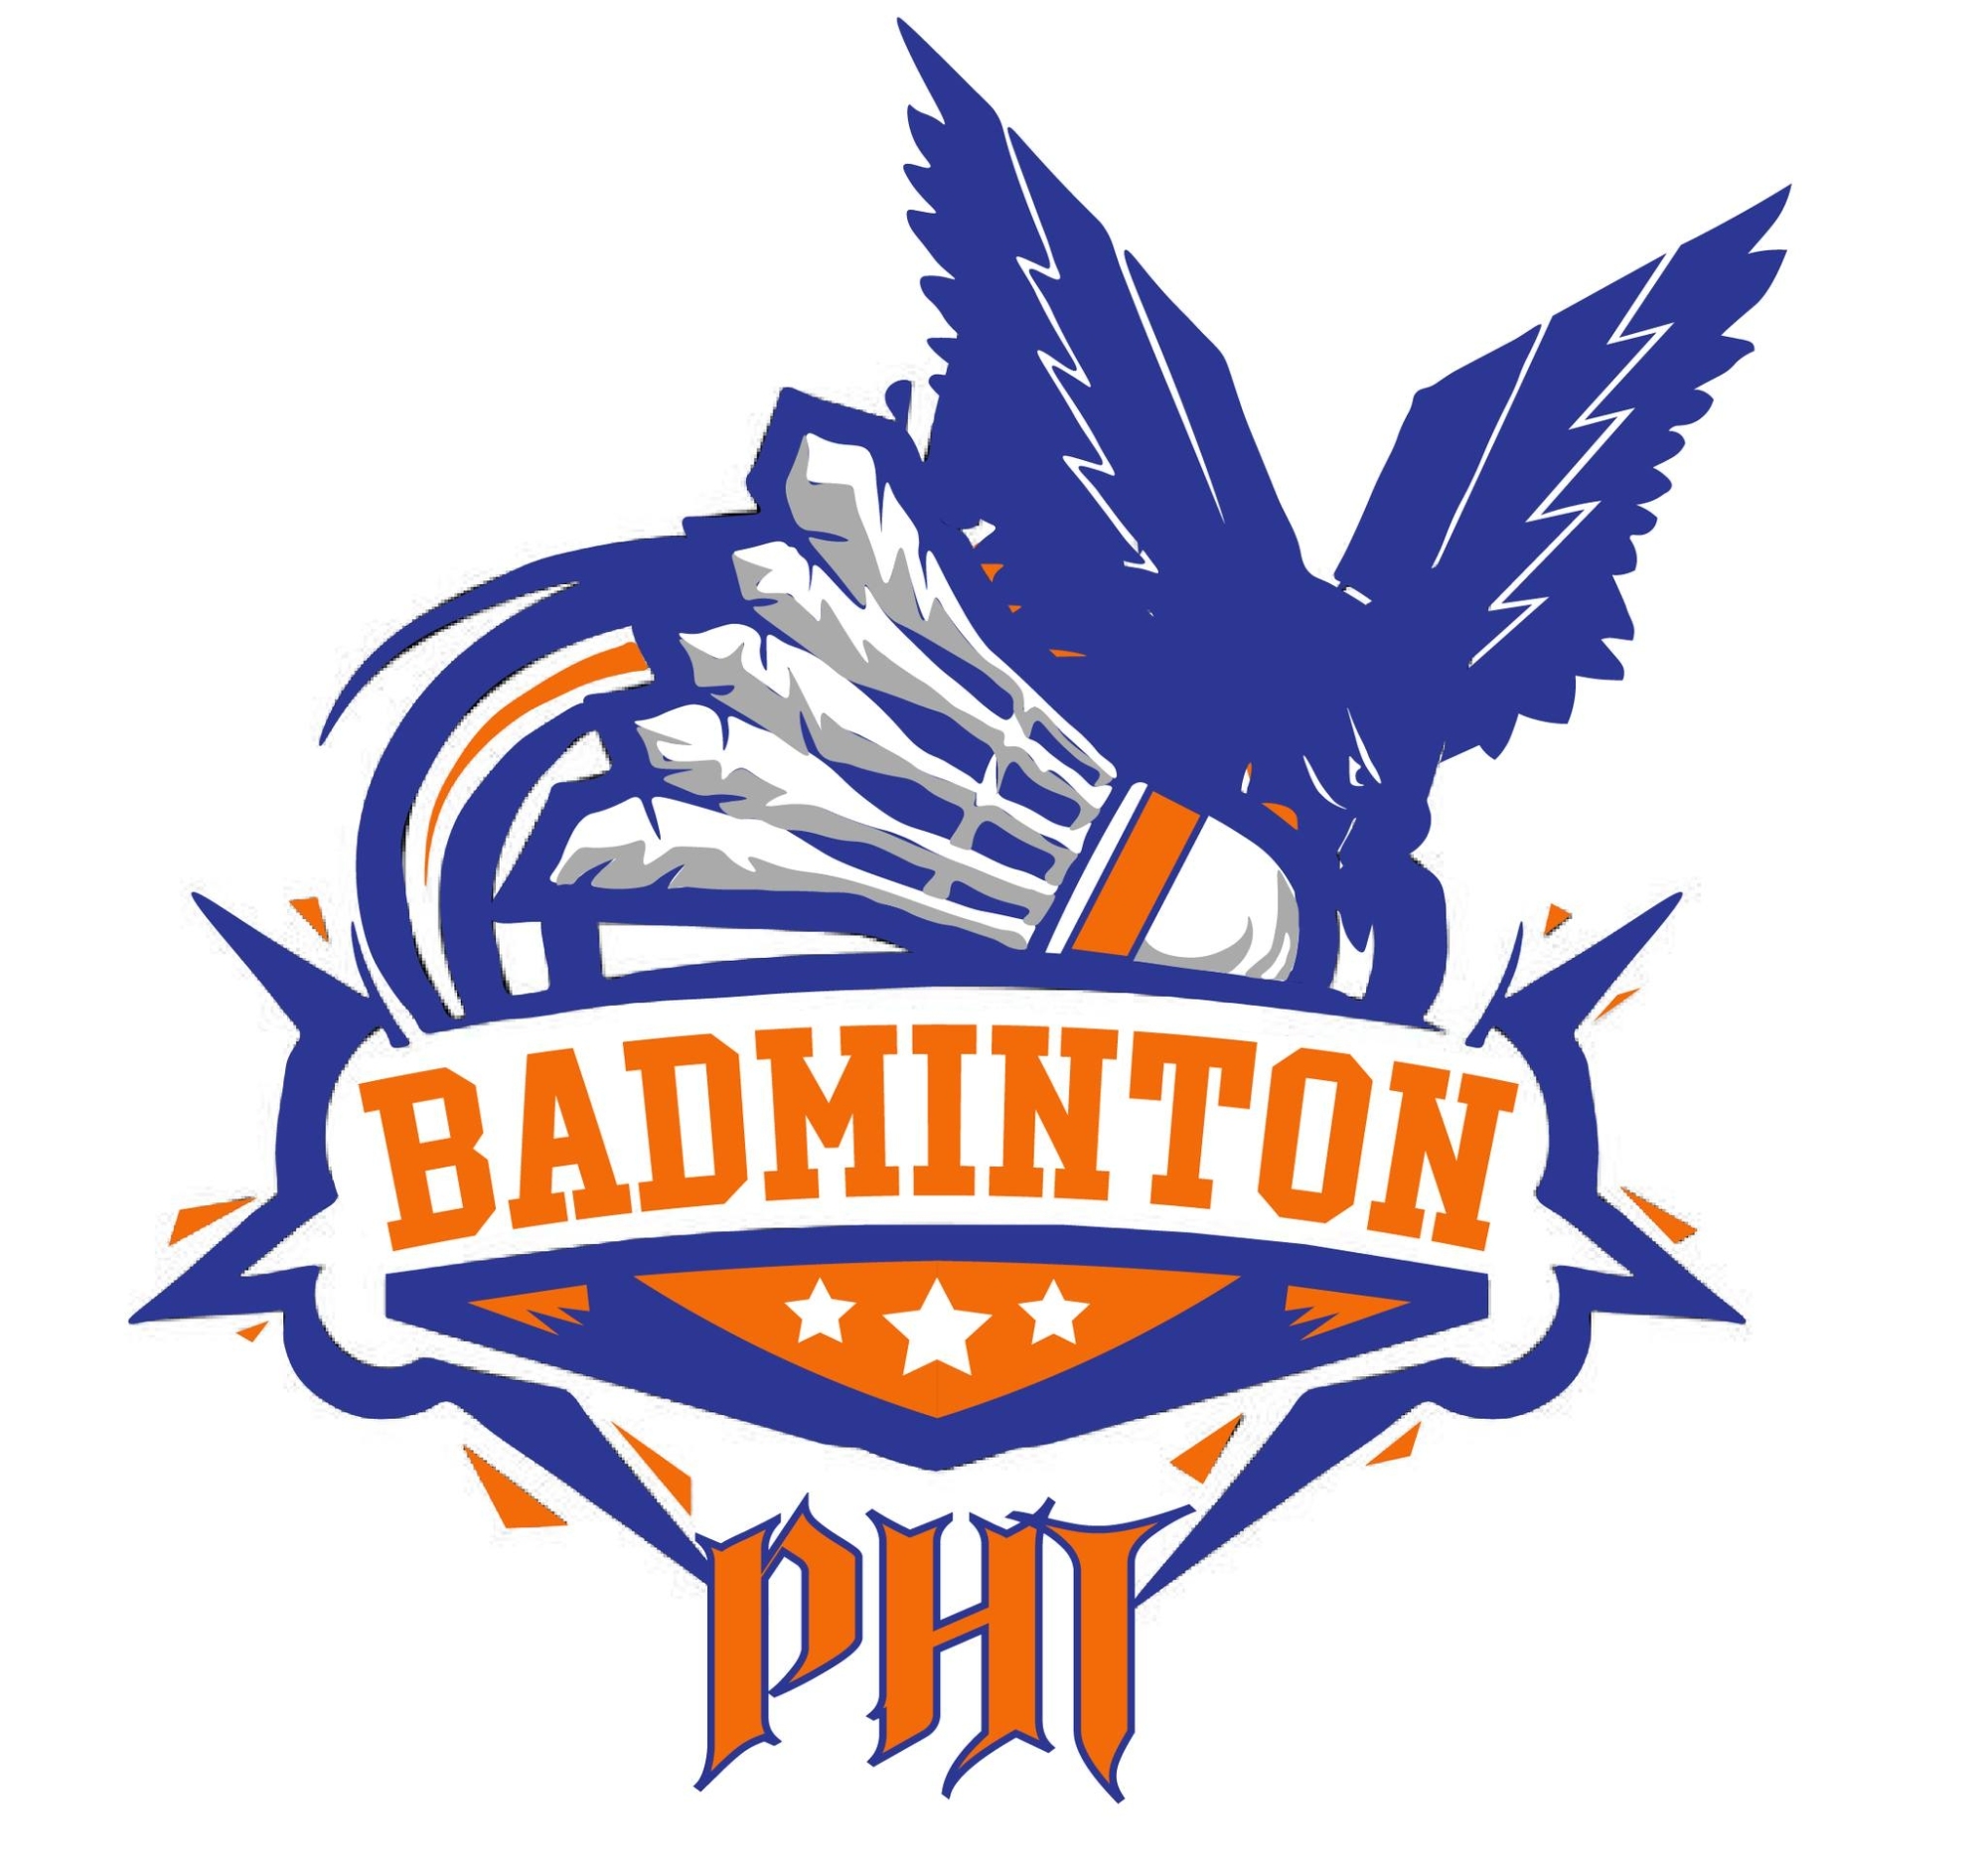 PHT Badminton Society